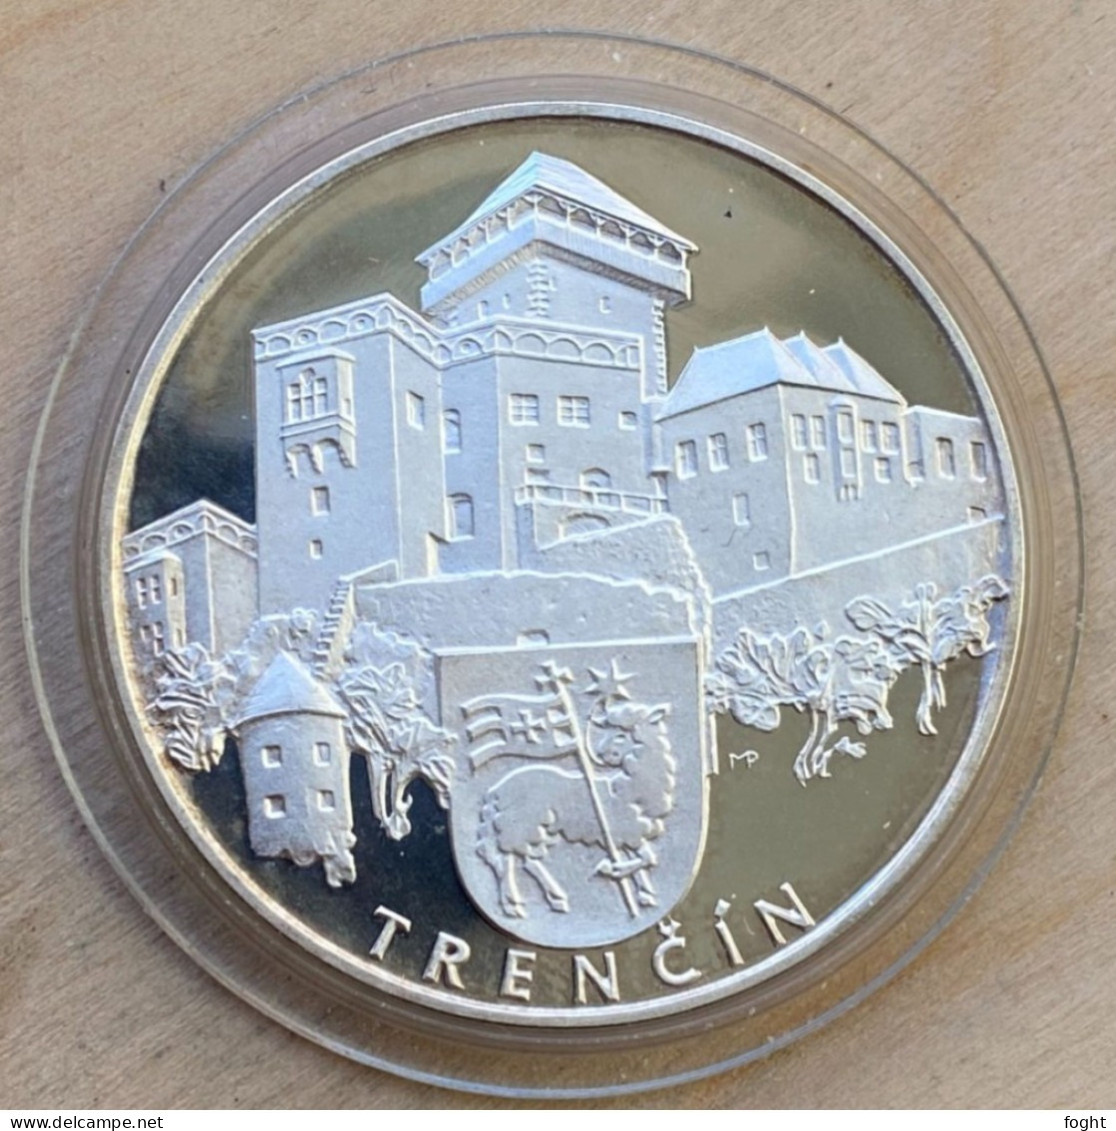 .900 Silver Slovak Souvenir Medal - Slovak Castles: TRENČÍN,6477 - Professionali / Di Società